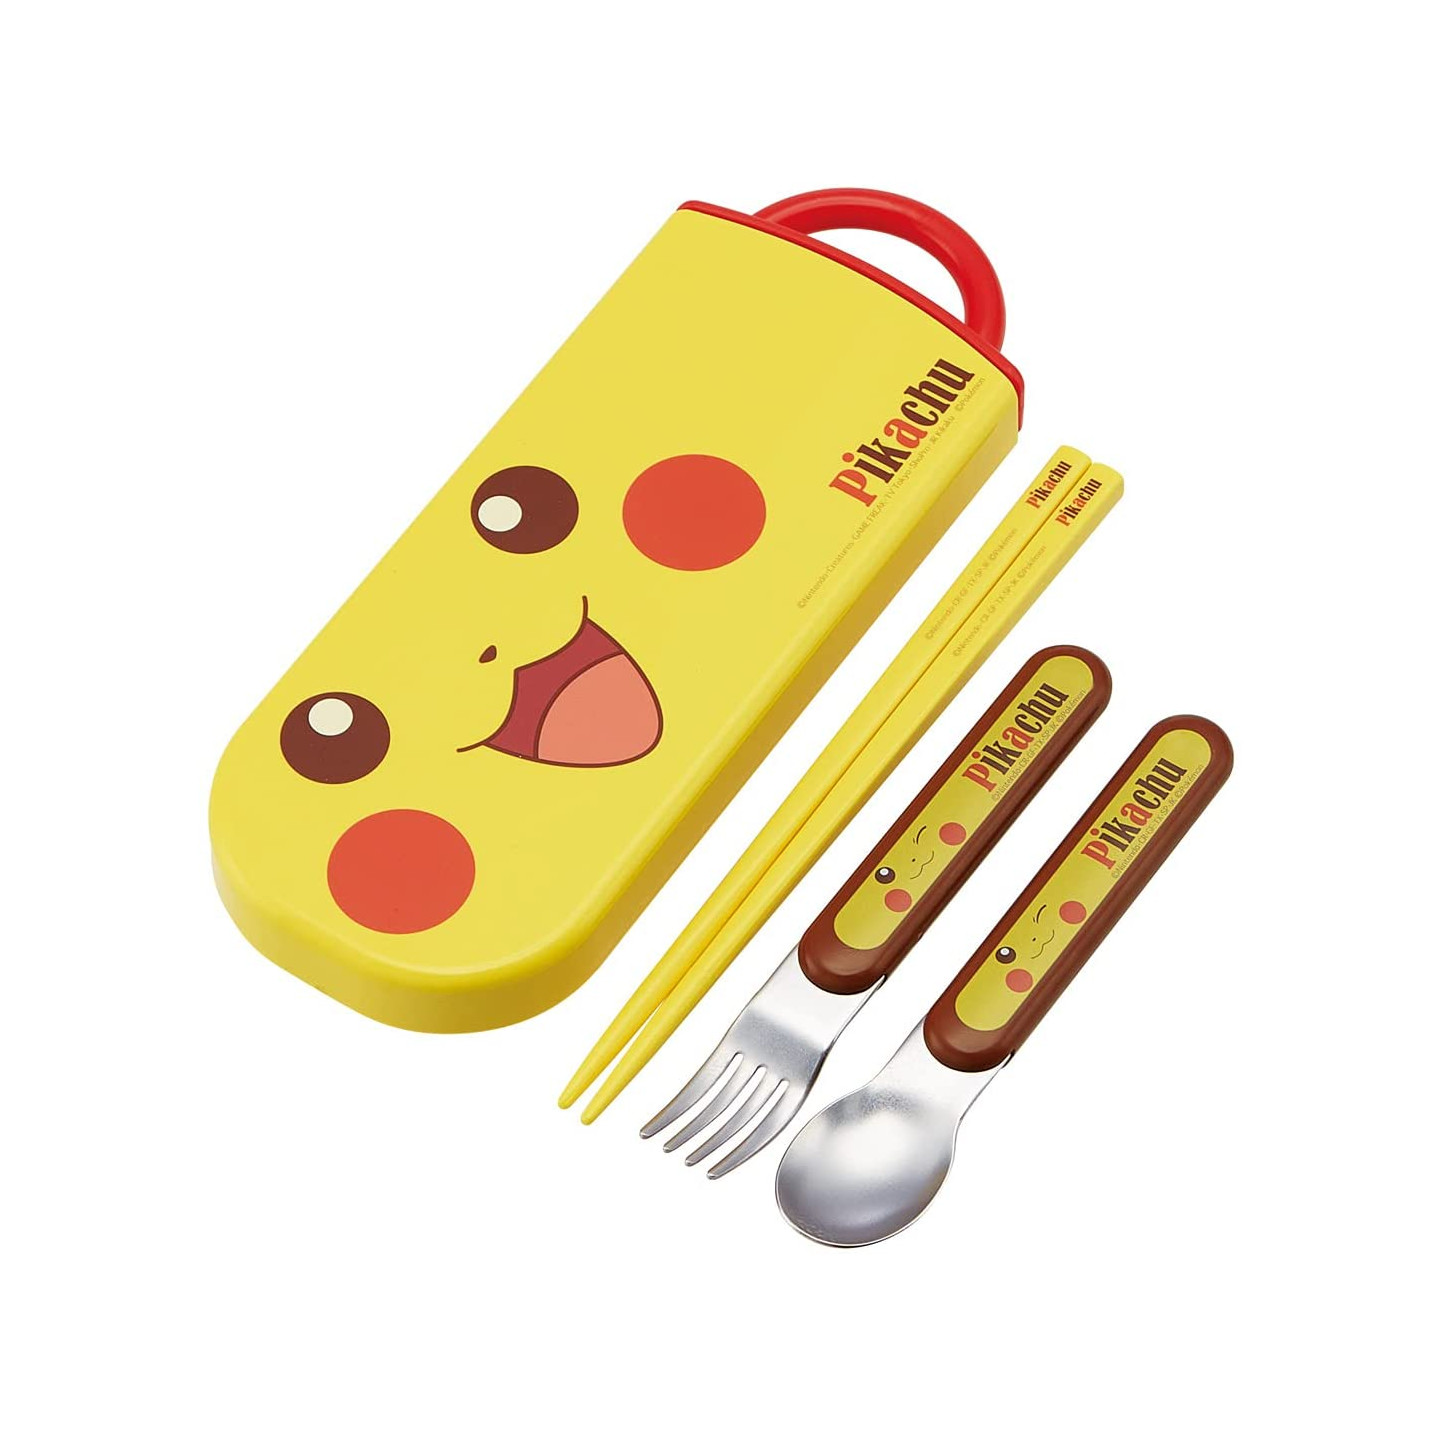 Moonwareusa Japan Skater Yellow Pokemon Series Chopsticks W Case